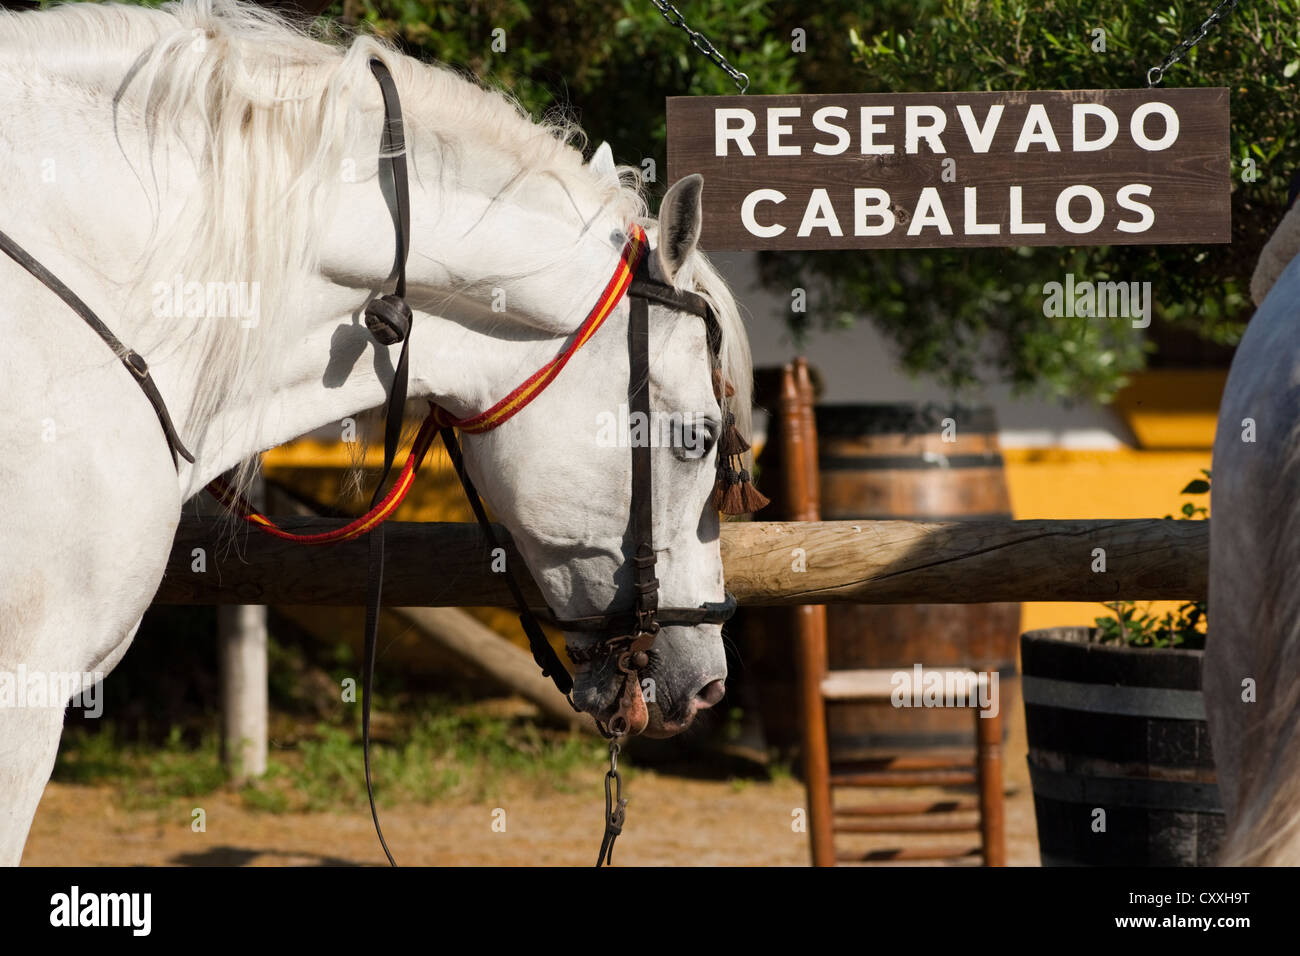 Bar y restaurante para jinetes de caballos, caballo andaluz estacionado en la parte frontal, El Rocío, Almonte, provincia de Huelva, Andalucía, España Foto de stock